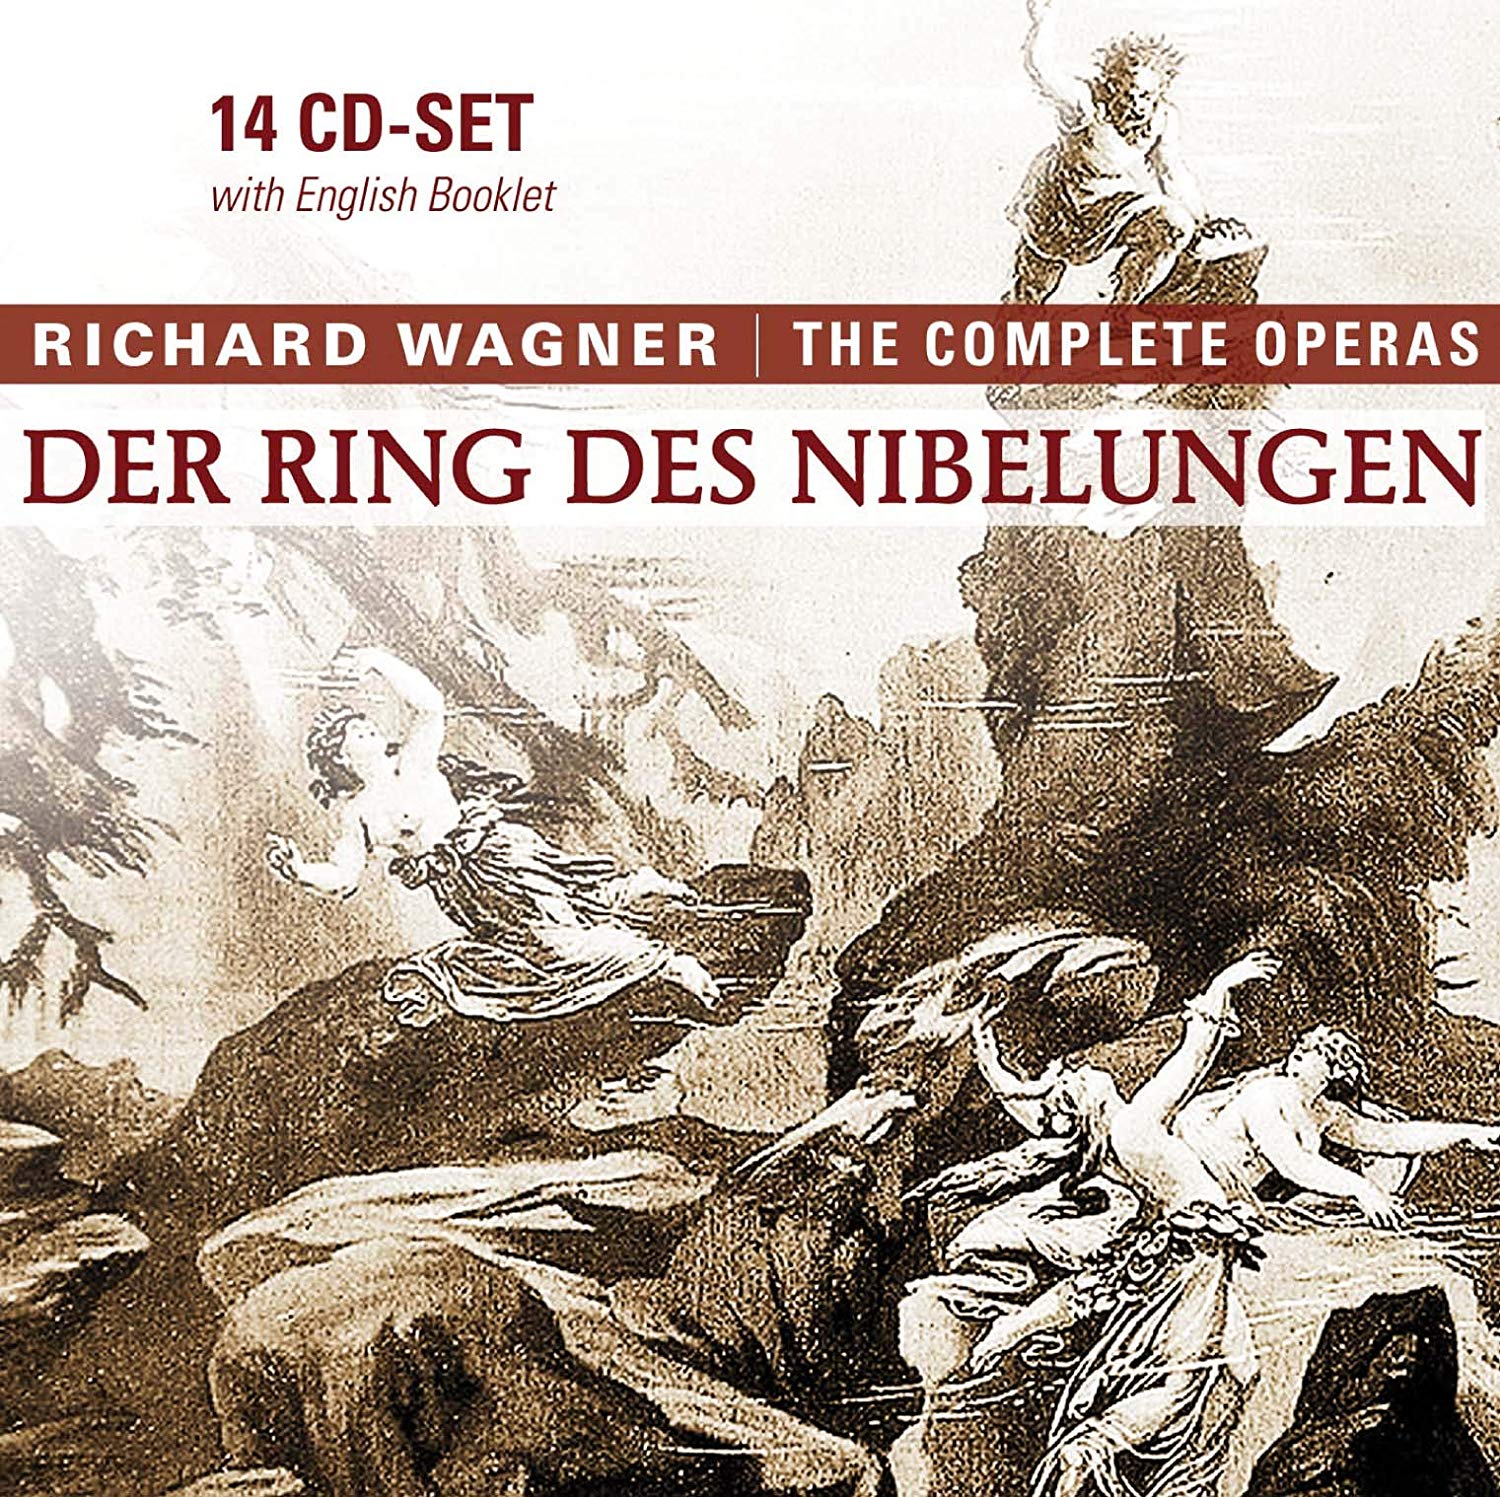 Richard Wagner, Der Ring des Nibelungen —The Complete Operas, CD-set cover, 2007.